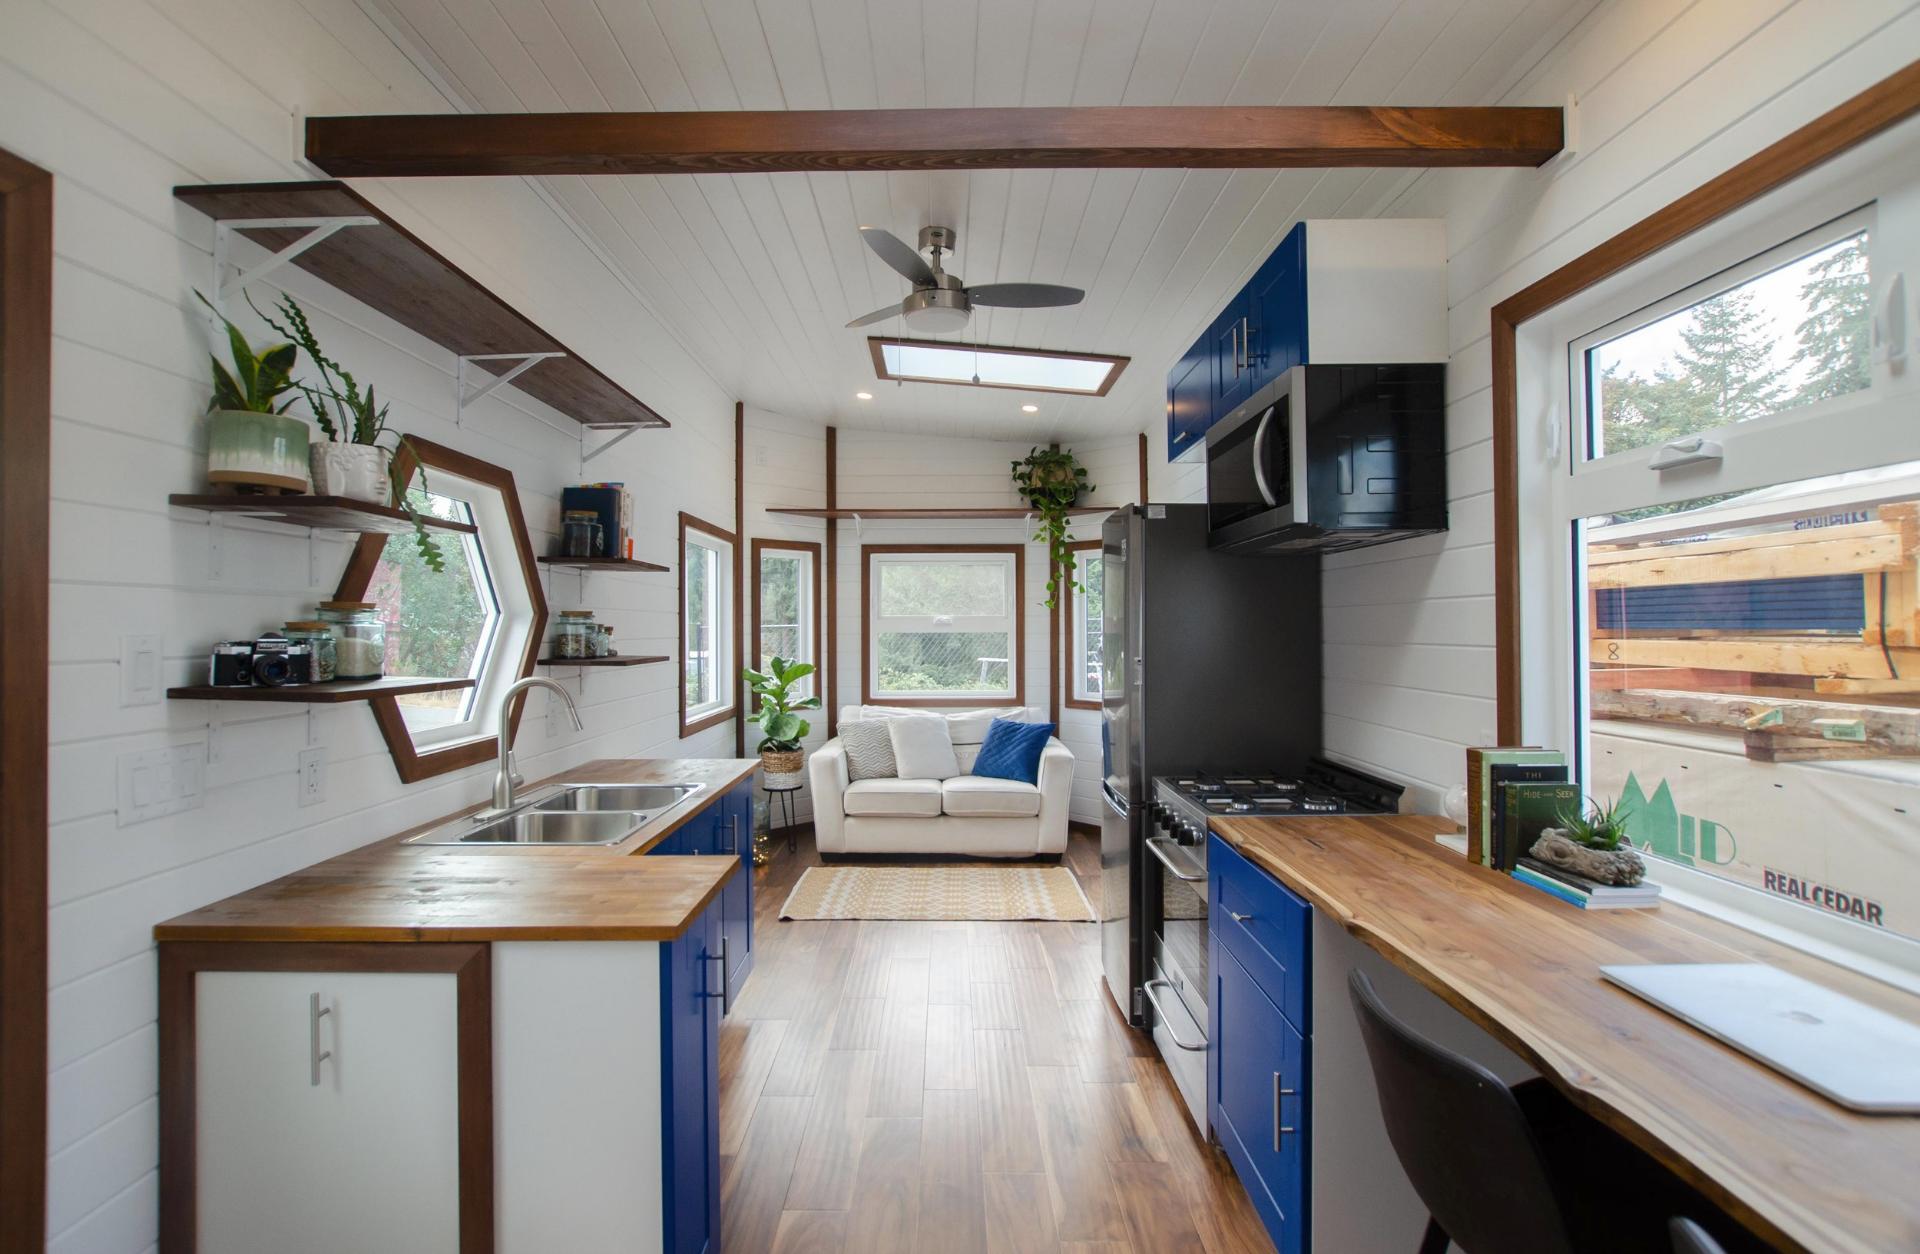 Kitchen & Living Room - Northern Flicker by Rewild Homes